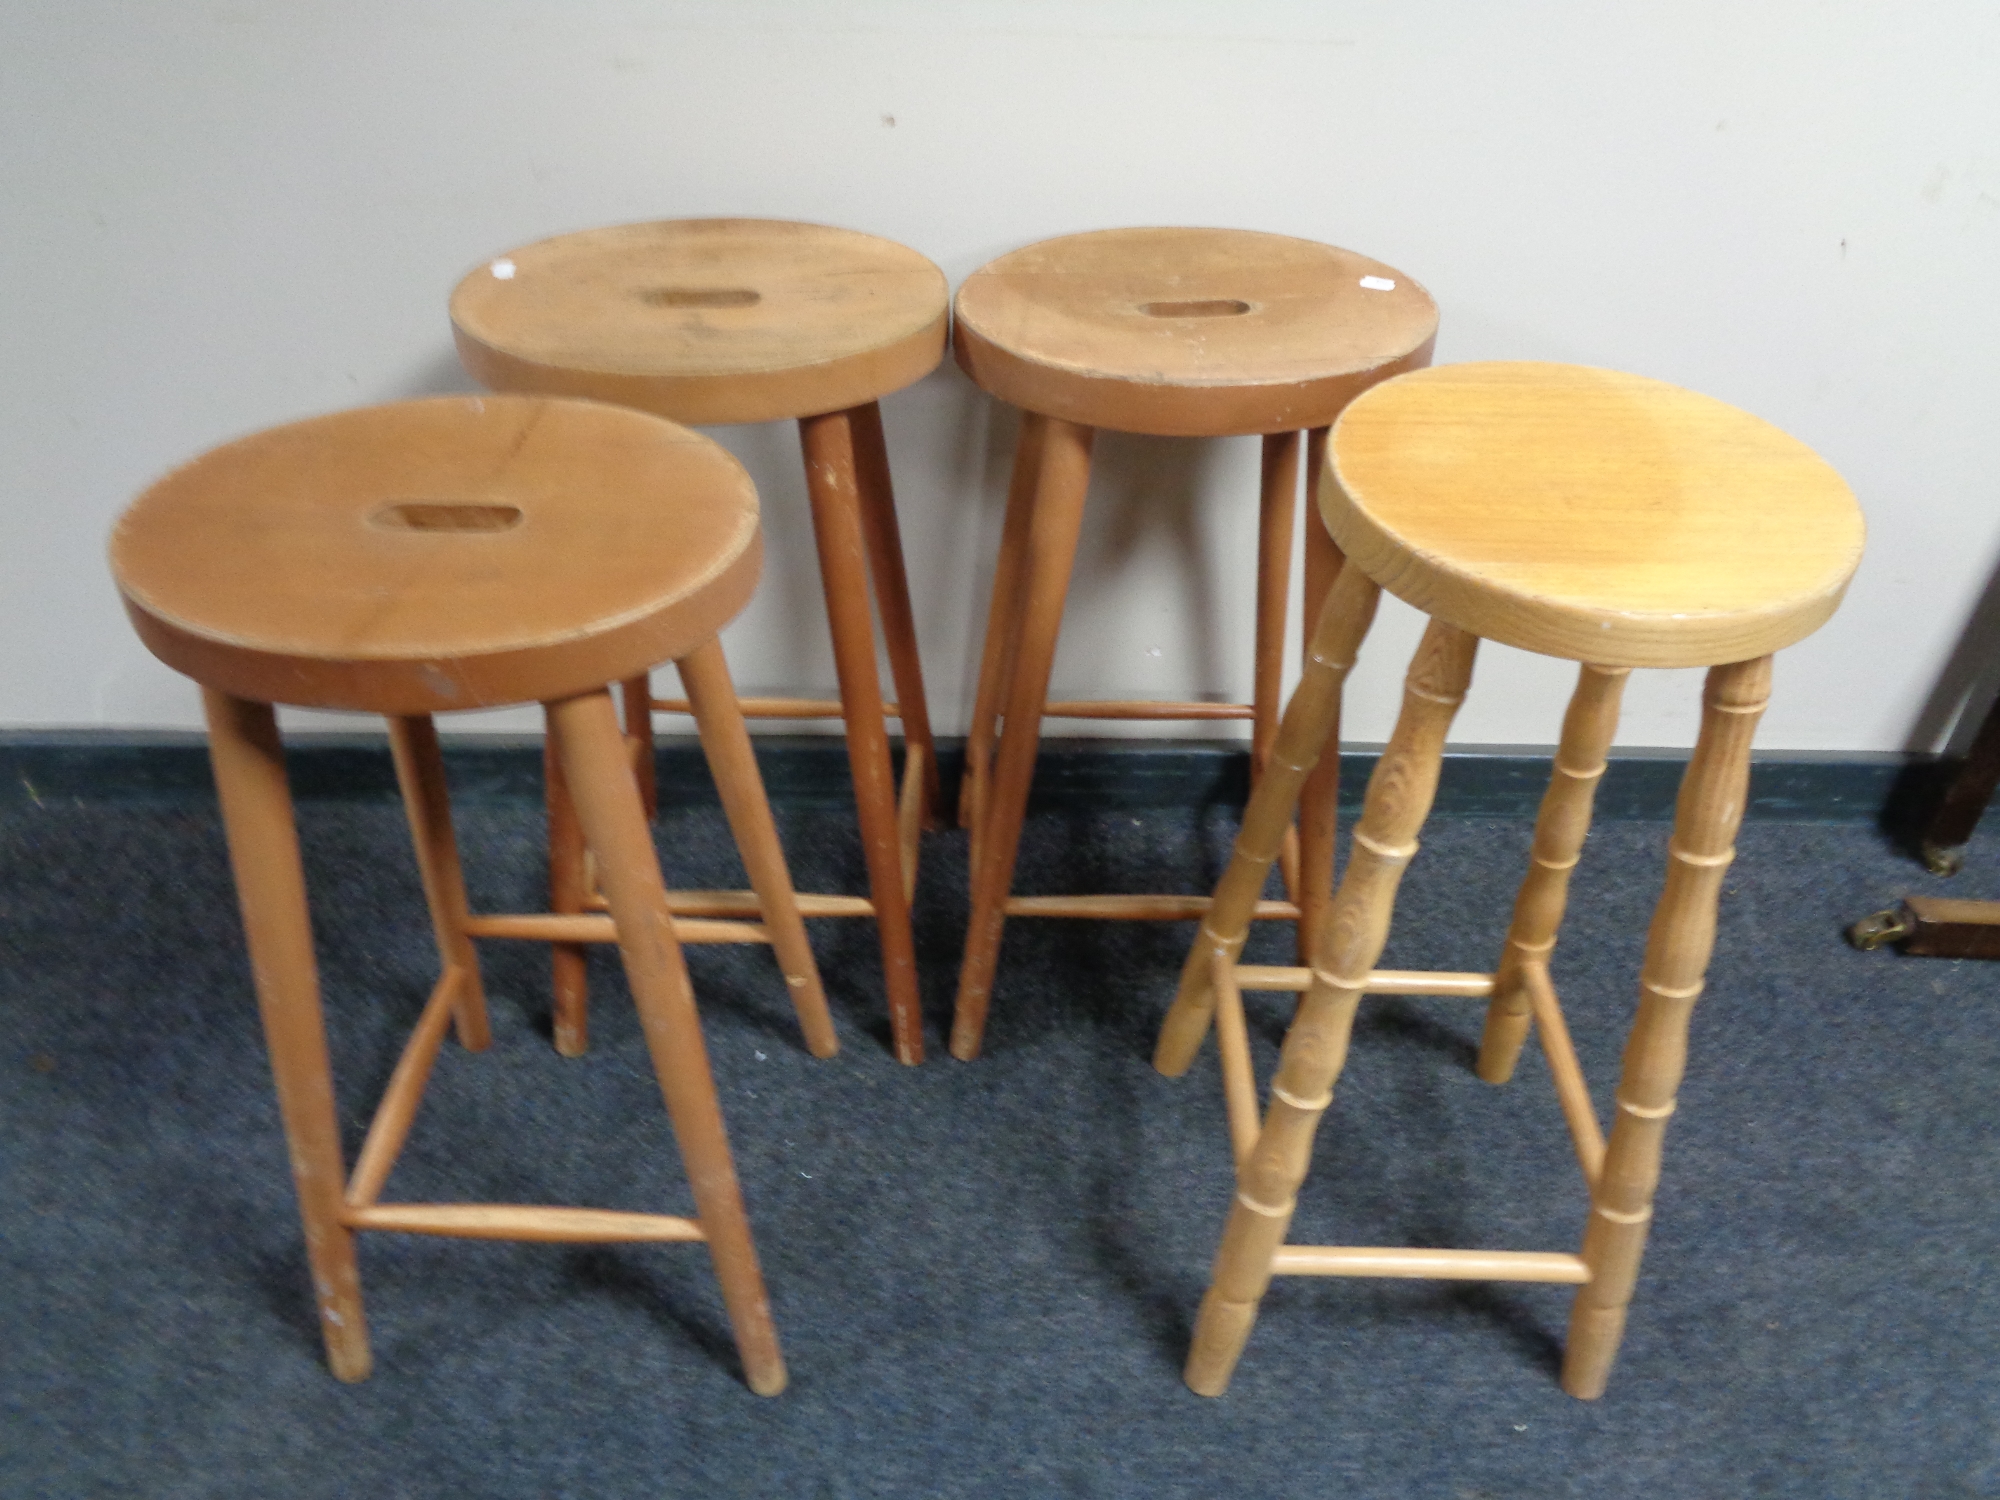 Four pine kitchen stools